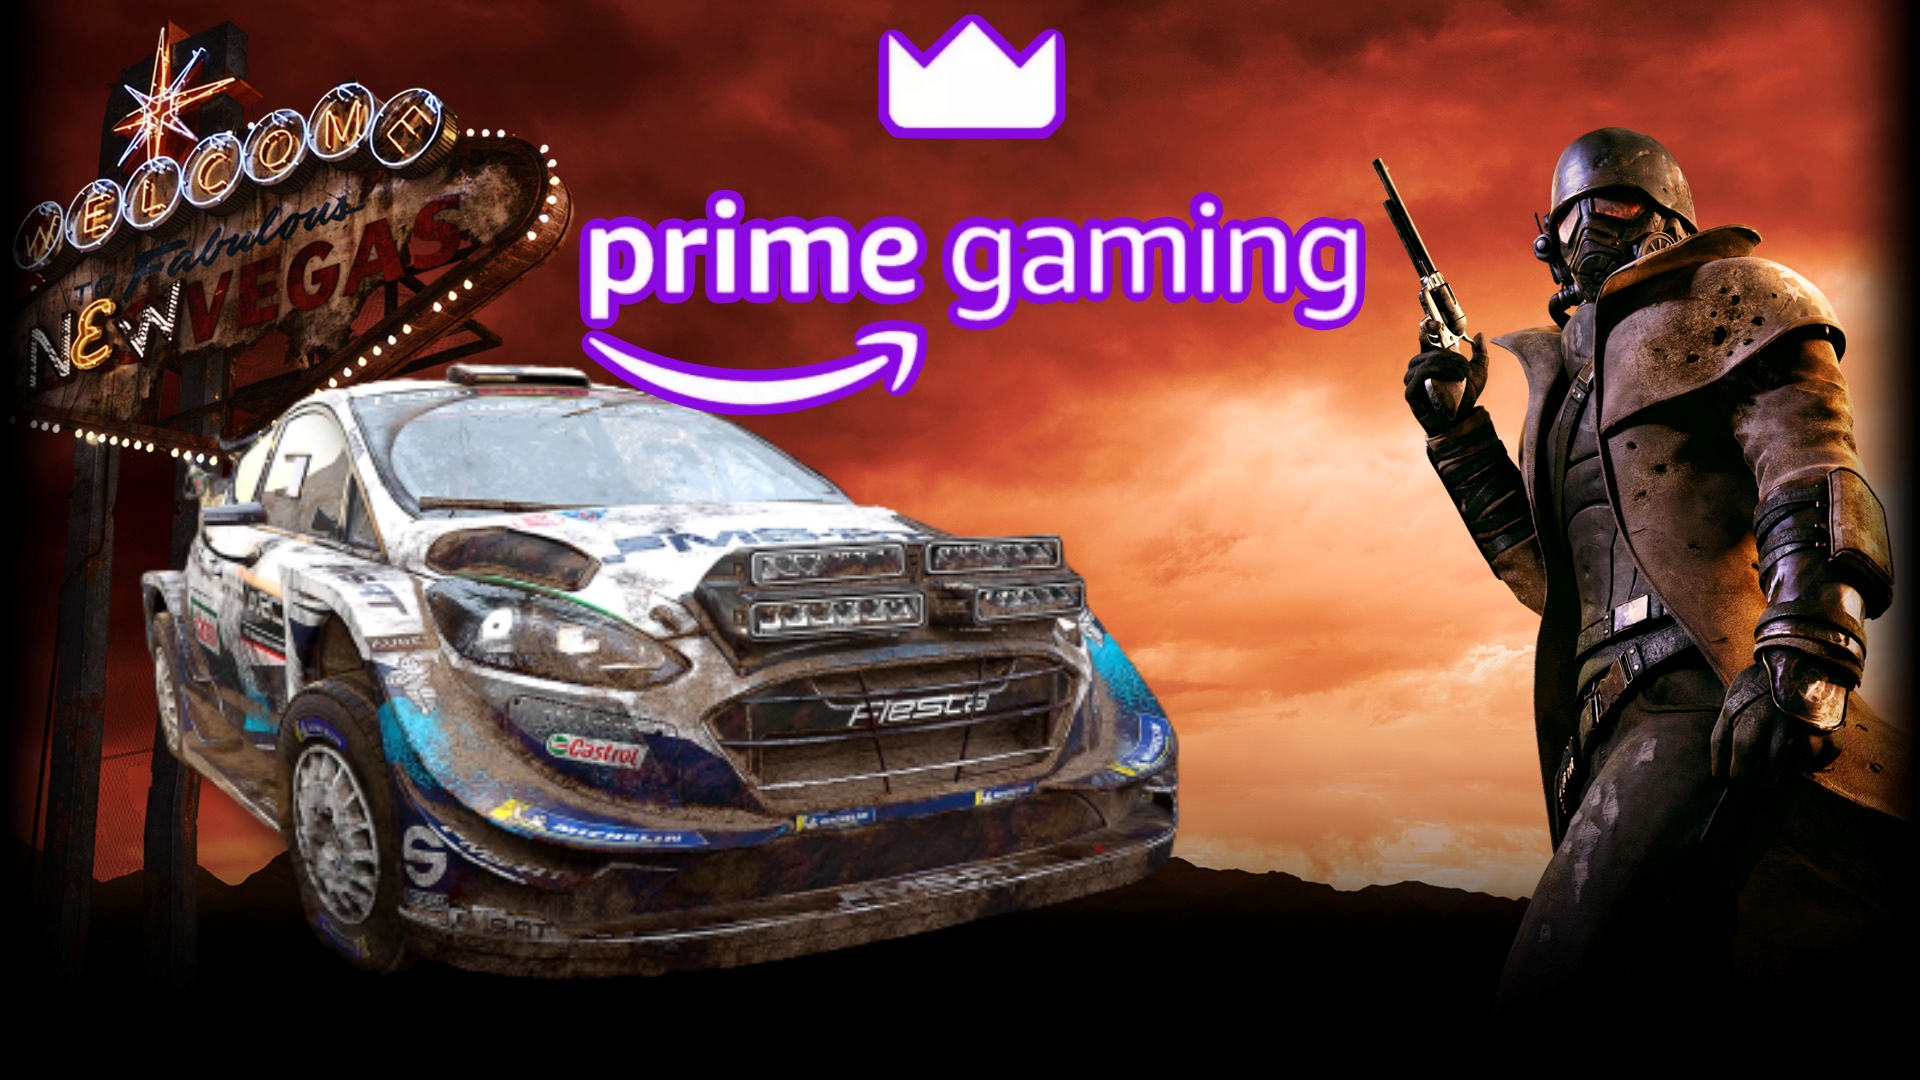 Amazon, Prime abonelerine Prime Gaming kapsamında her ay ücretsiz olarak oyunlar veriyor. Kasım ayında verilecek 7 ücretsiz oyun sızdırıldı.
Amazon Prime Gaming abonelerini Kasım ayında yine harika ücretsiz oyunlar bekliyor. Sızdırılan bilgilere göre Kasım 2022 Prime Gaming ile ücretsiz olarak verilecek 7 oyunun toplam değeri tam 392 TL.
İşte Amazon Prime Gaming Kasım ayı ücretsiz oyunları:
(Not: Bu liste resmi liste değildir. İlerleyen günlerde değişiklik gösterebilir)